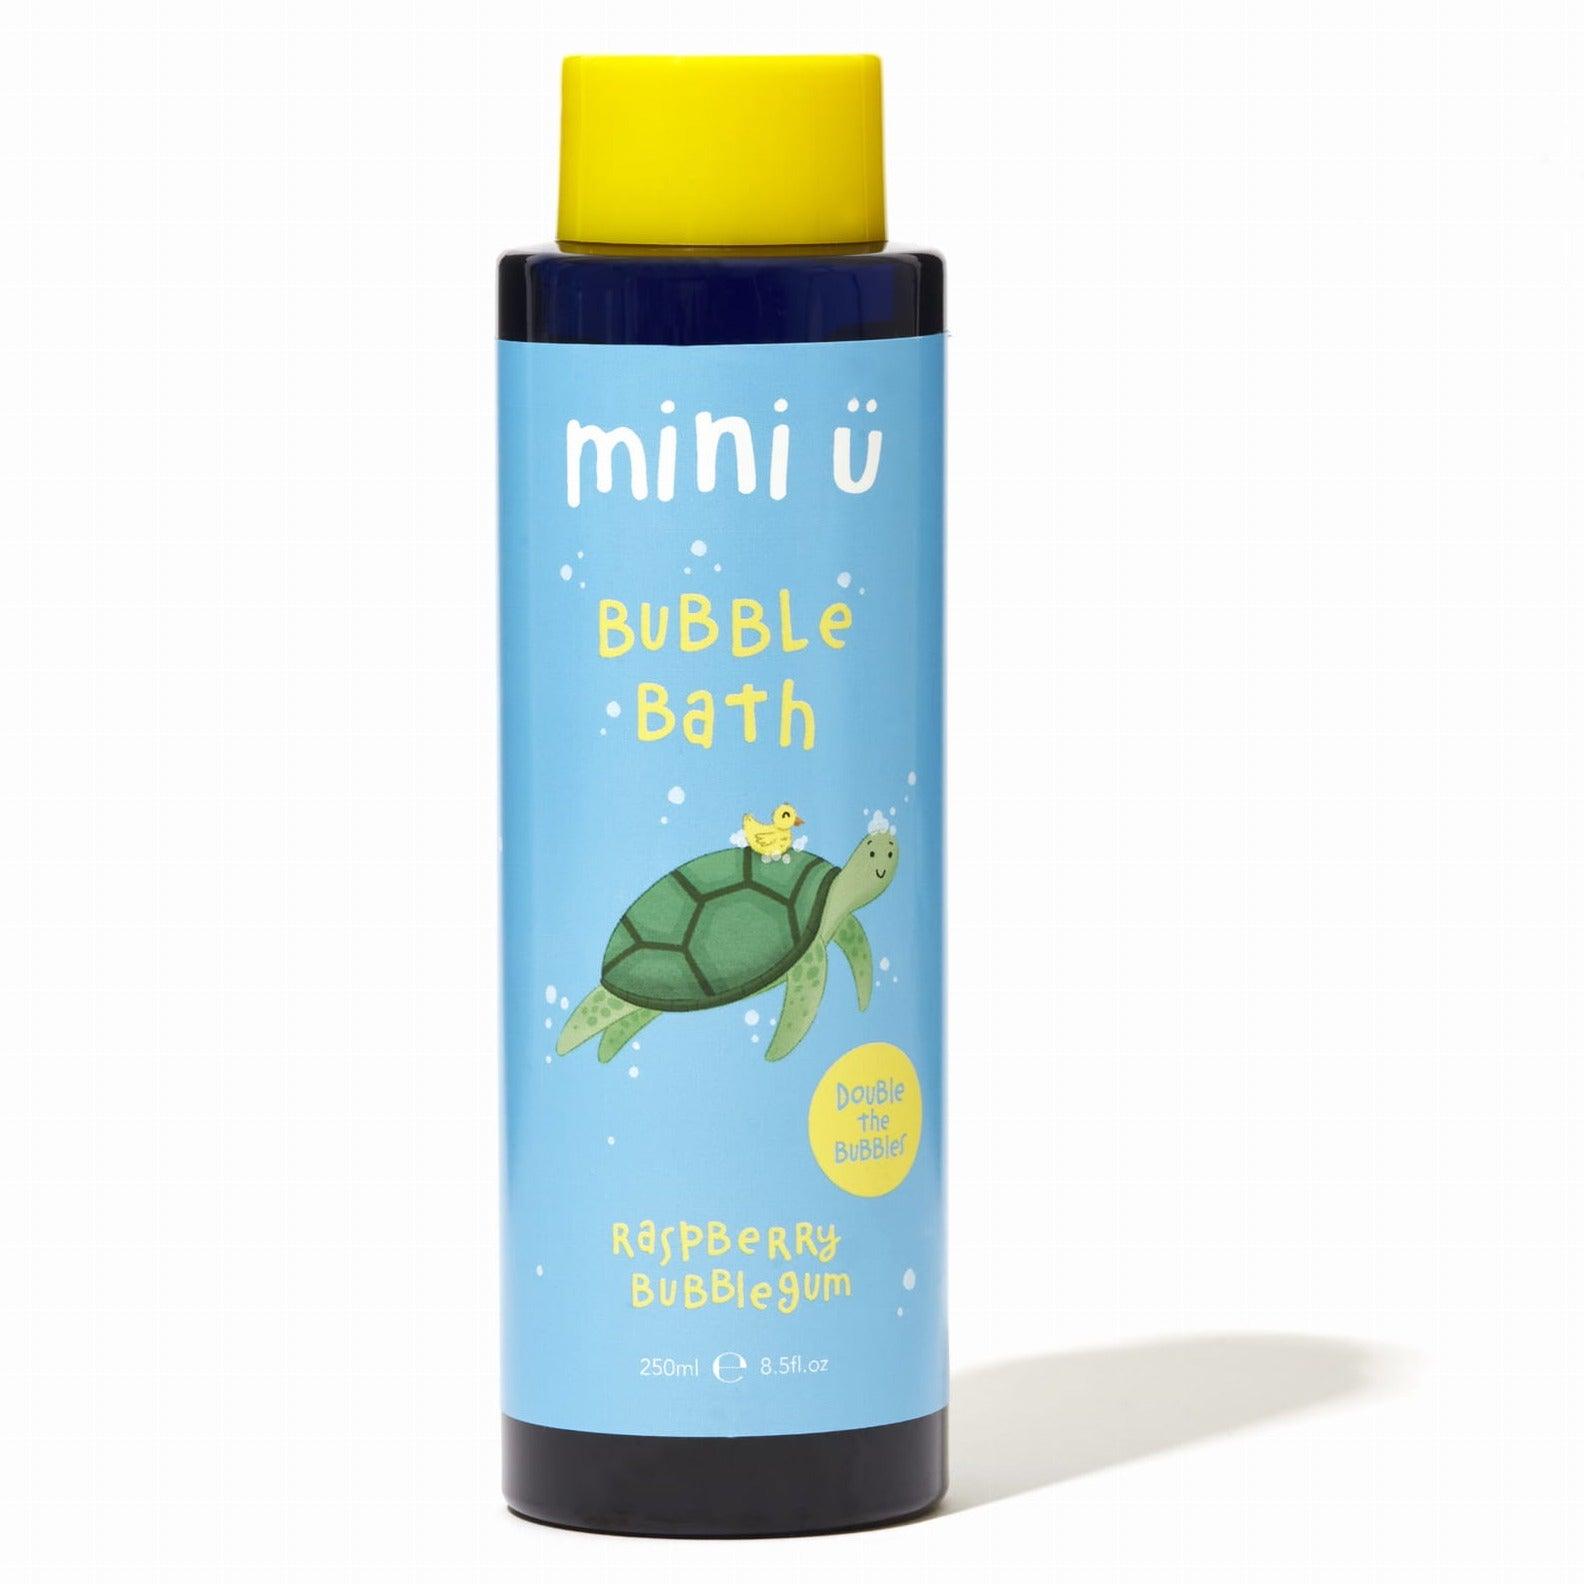 Mini U: naturalny bąbelkowy płyn do kąpieli Raspberry Bubblegum - Noski Noski